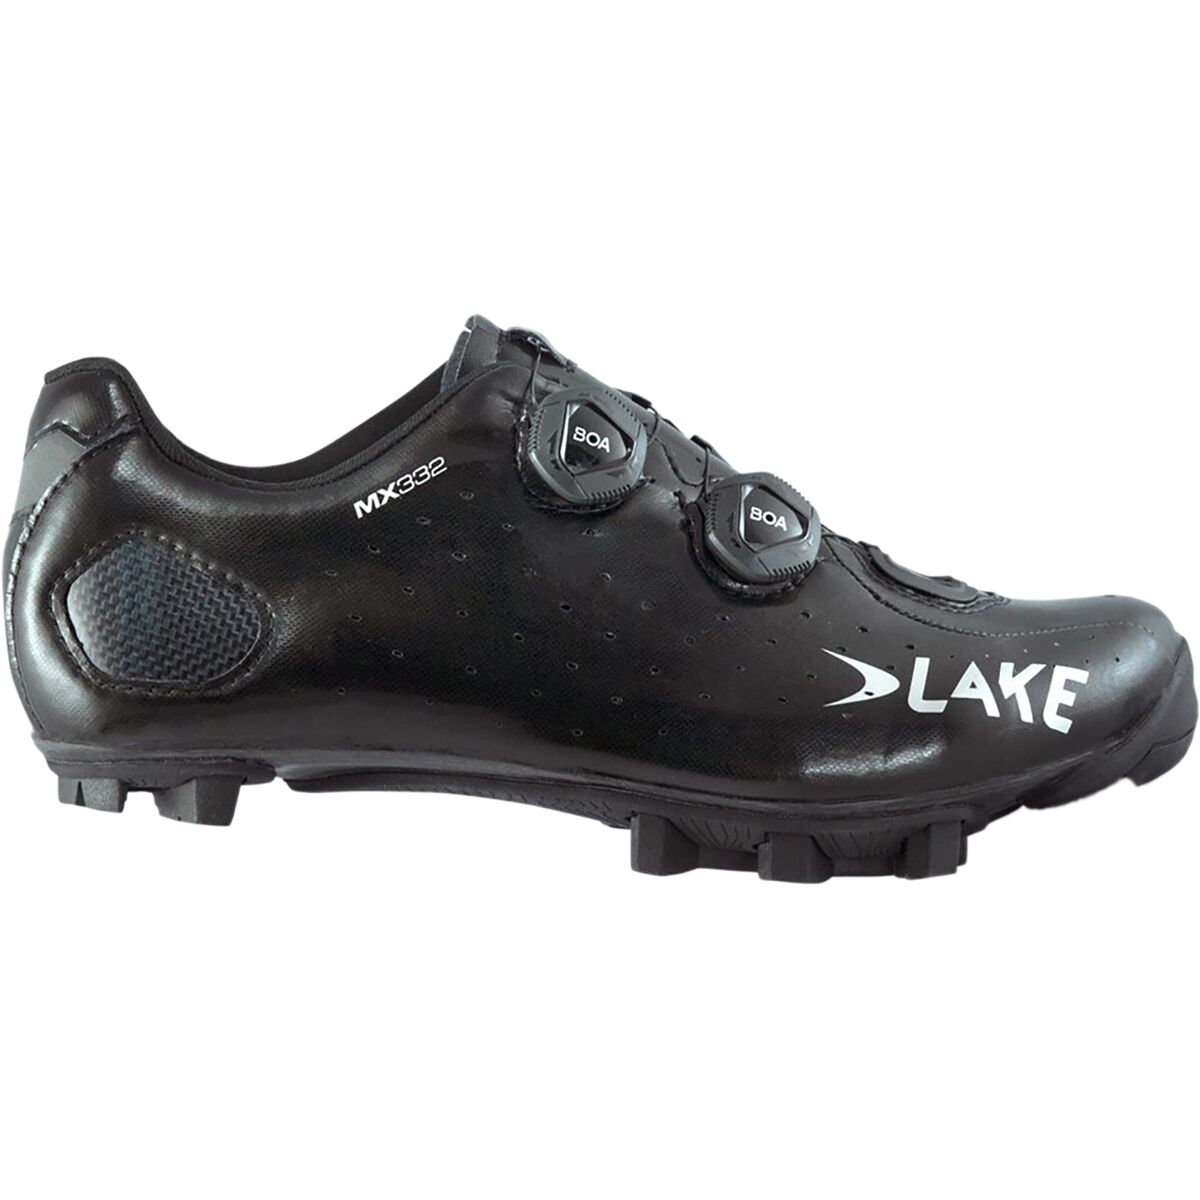 Обувь для горного велосипеда Clarino MX332 Wide Lake